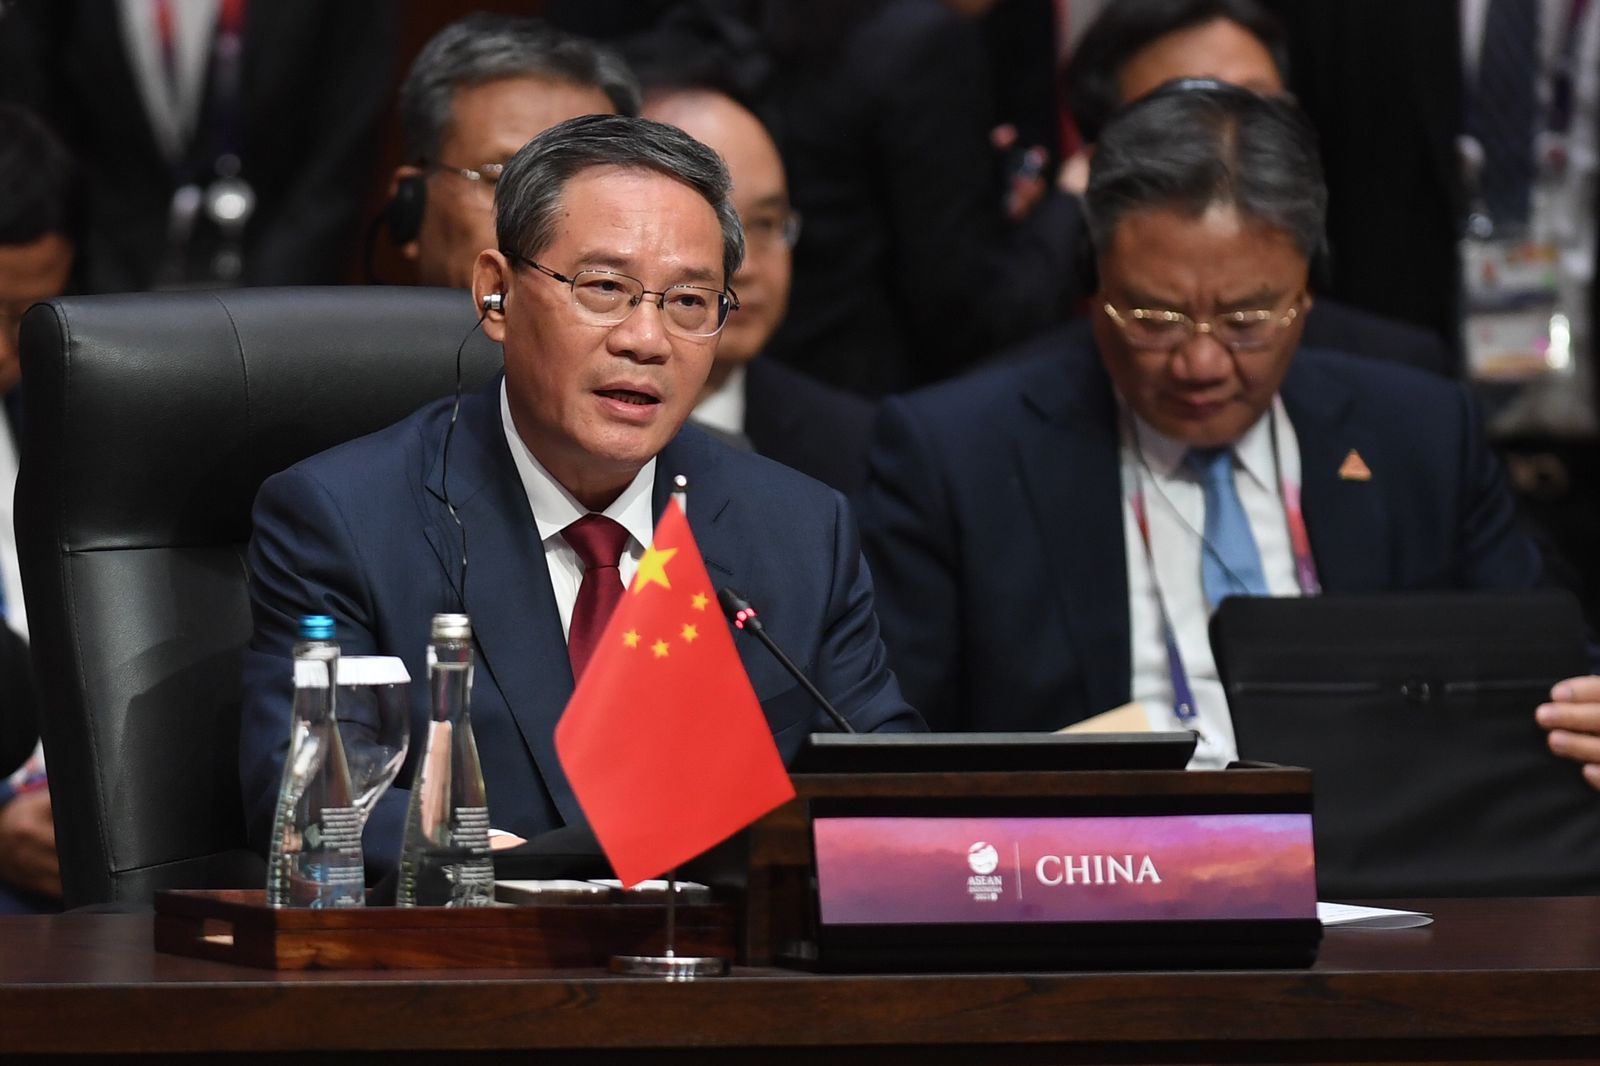 Singgung Kerja Sama dengan ASEAN, PM China Kenang Masa Sulit saat Covid-19